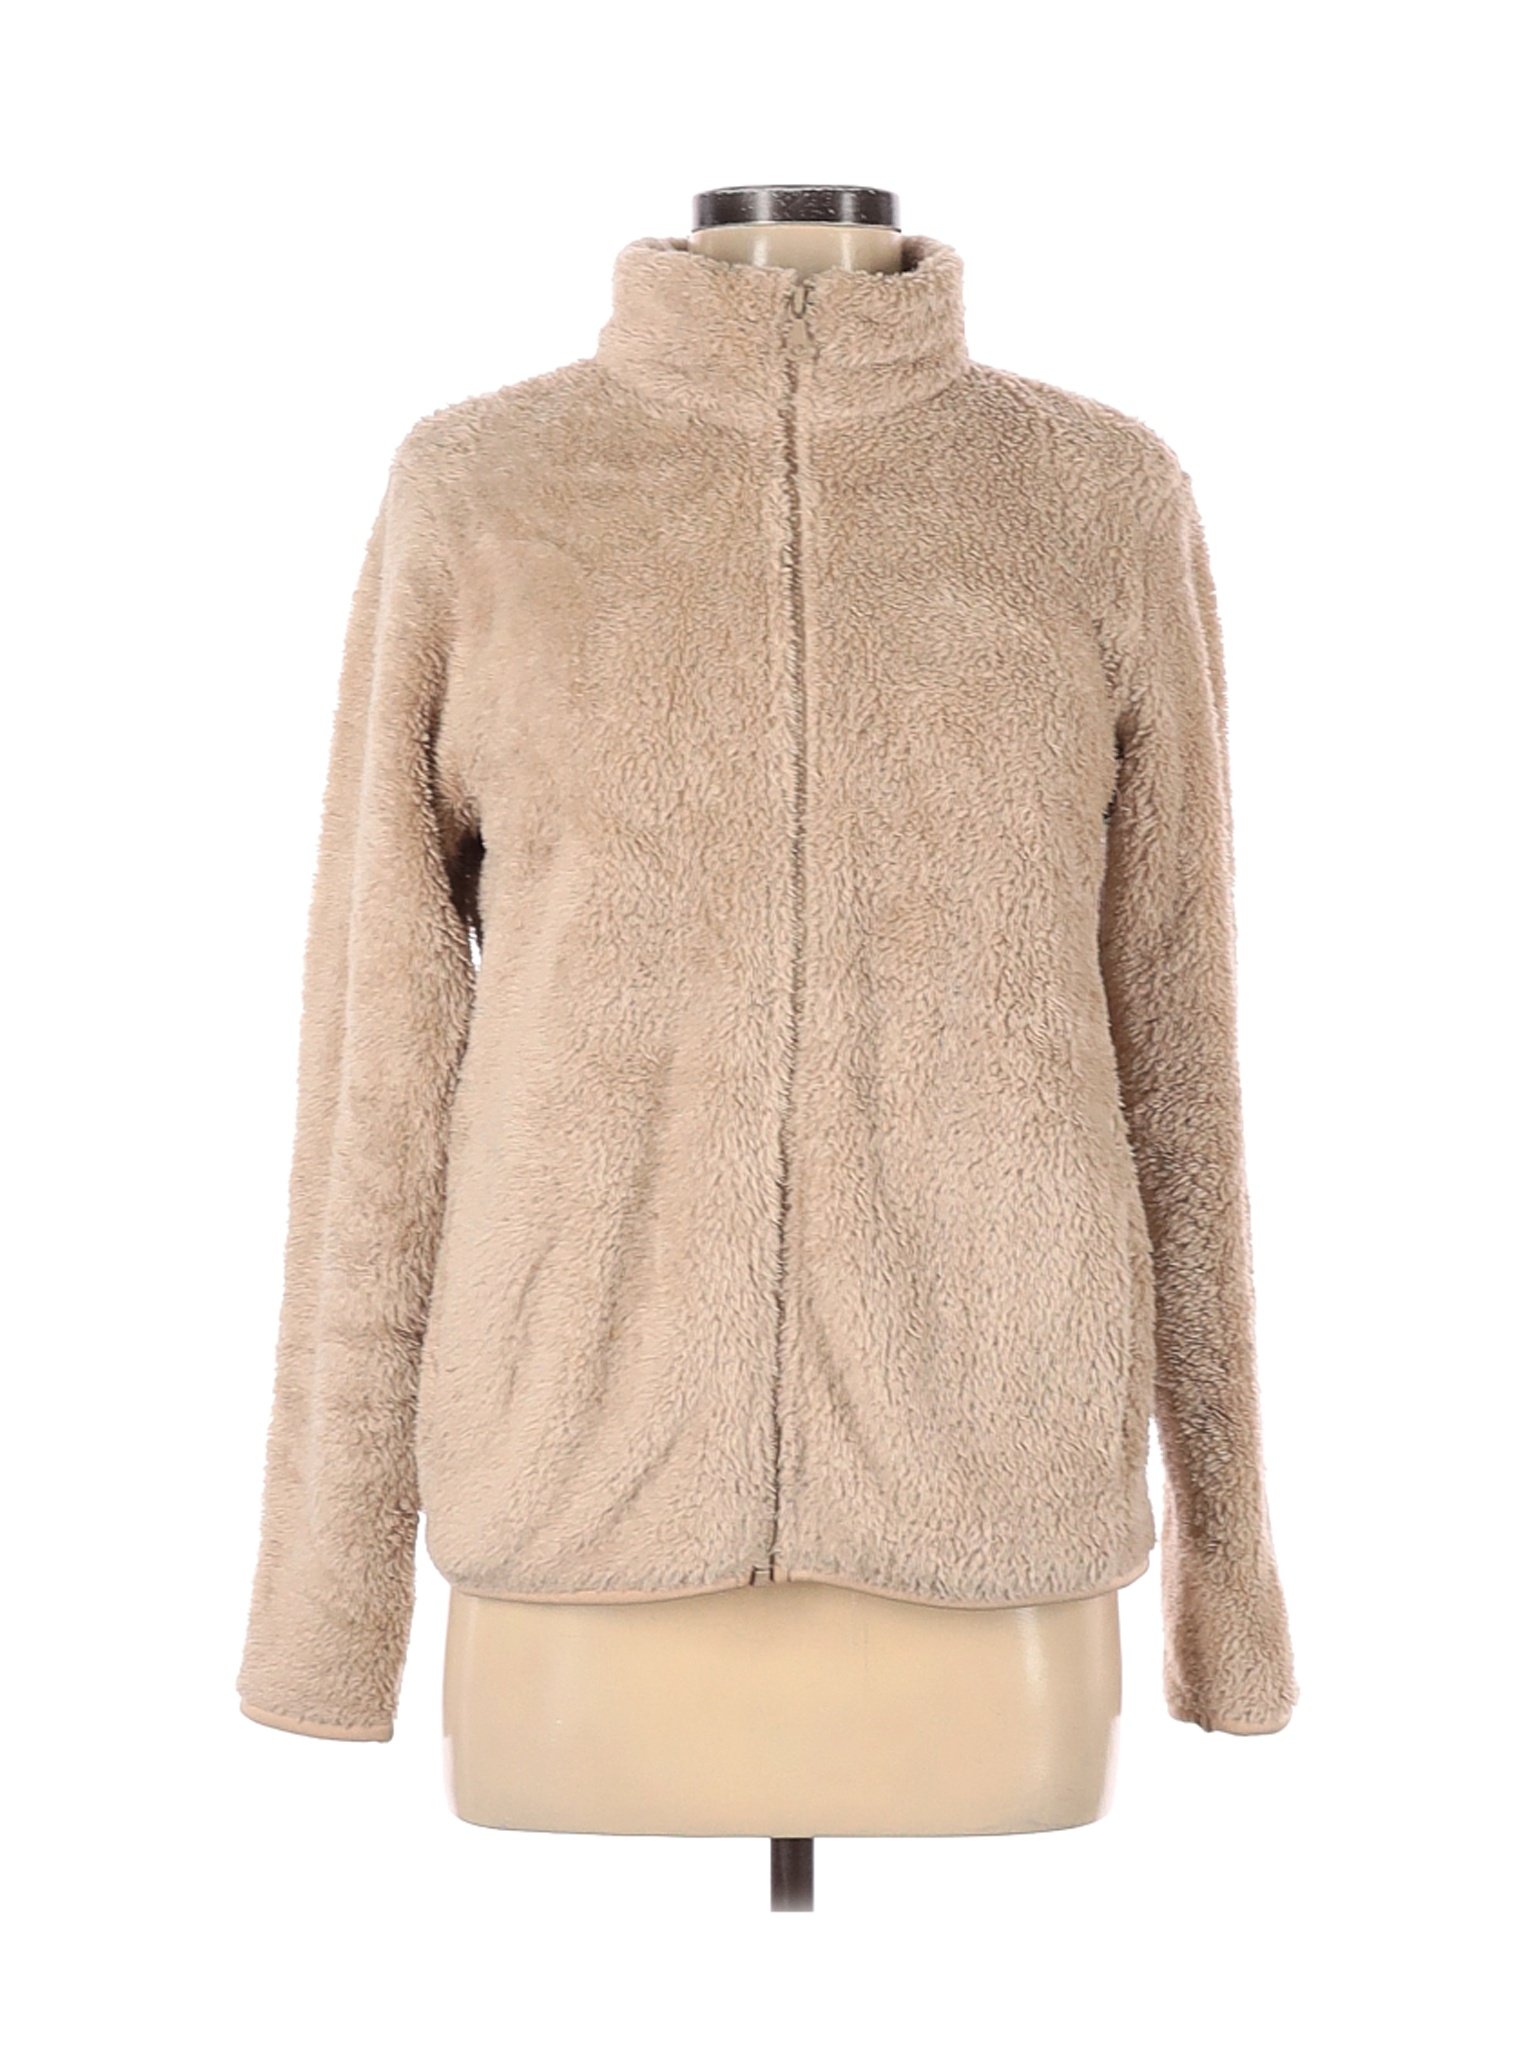 Uniqlo Women Brown Faux Fur Jacket M | eBay